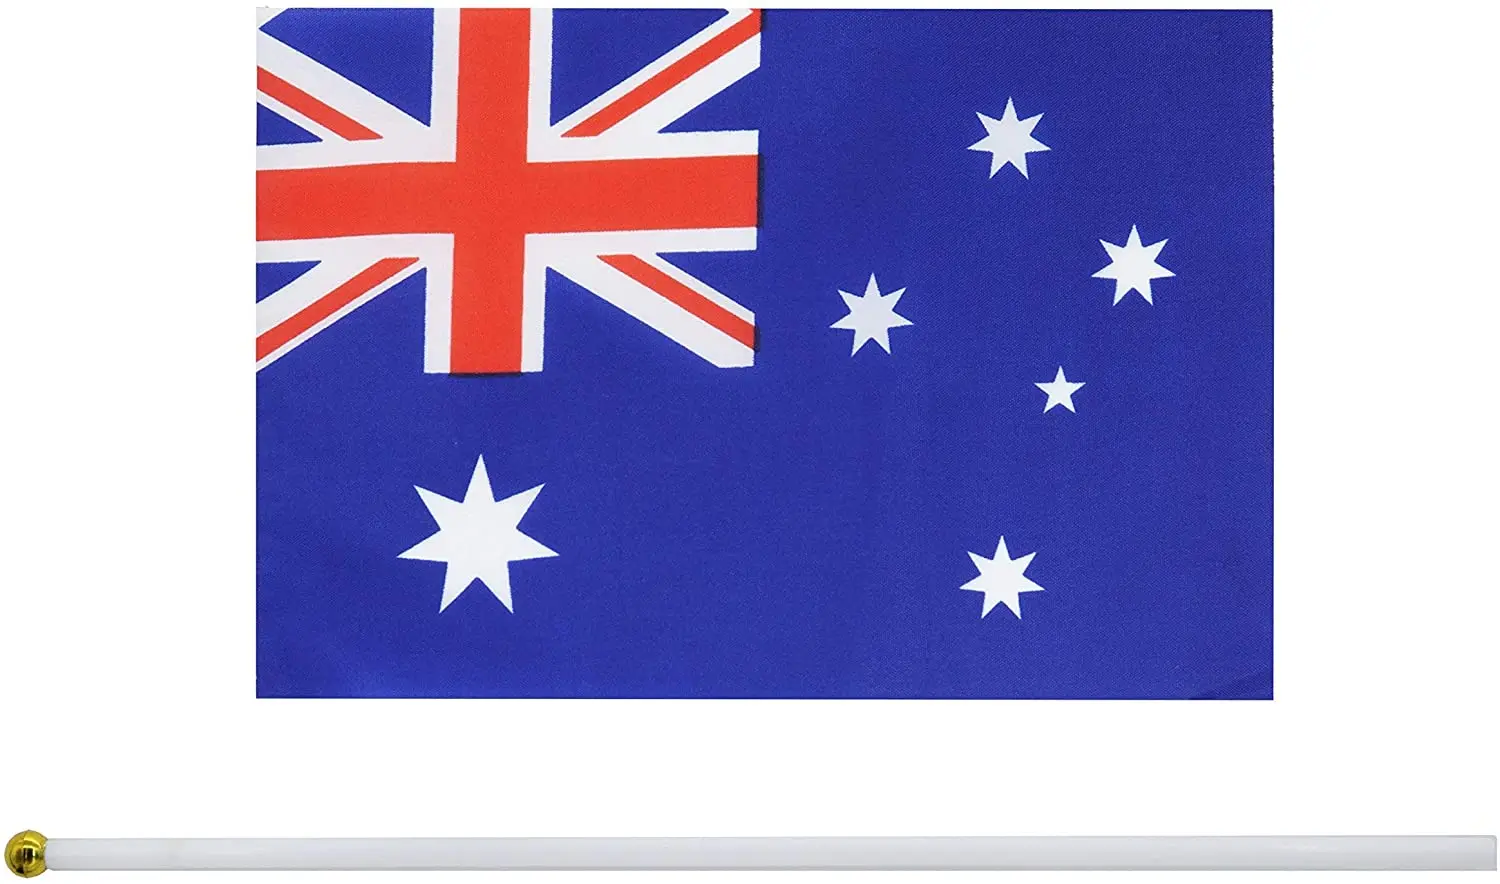 Cờ quốc gia Úc cầm tay: Với cờ quốc gia Úc trong tay, mọi người cảm nhận được sức mạnh và sự tự hào về đất nước. Chỉ cần một cái nhìn thoáng qua, chúng ta đã có thể cảm nhận nguồn cảm hứng để yêu quê hương hơn nữa. Hãy xem tấm hình để cùng nhau trải nghiệm sự kiêu hãnh với cờ quốc gia Úc cầm tay.